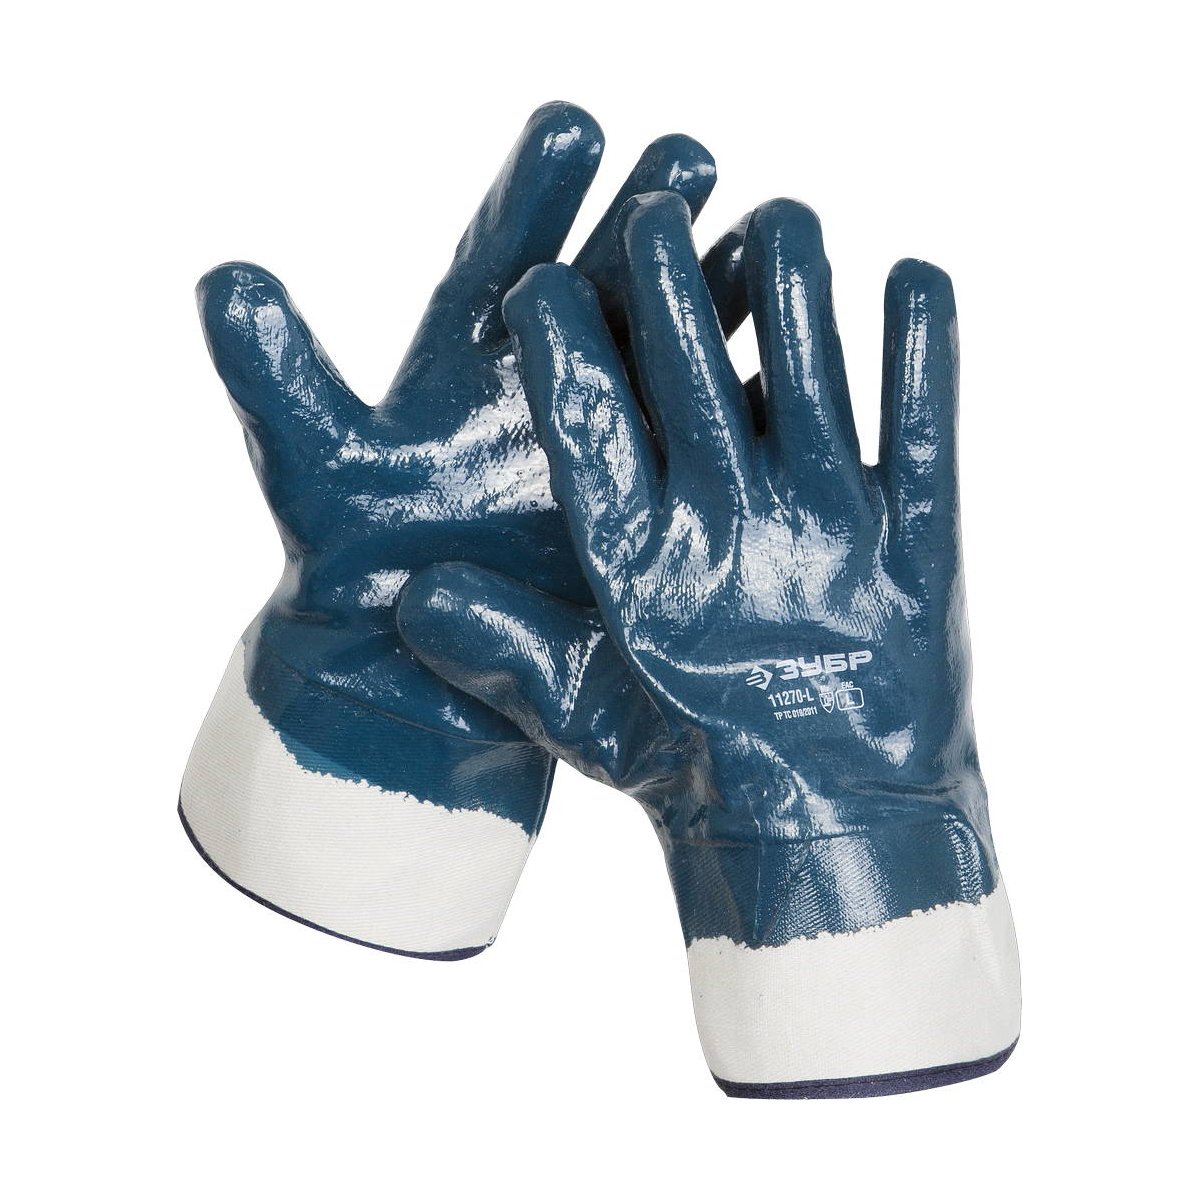 Прочные перчатки ЗУБР с нитриловым покрытием, масло-бензостойкие, износостойкие, L(9), HARD, ПРОФЕССИОНАЛ, (11270-L)Купить